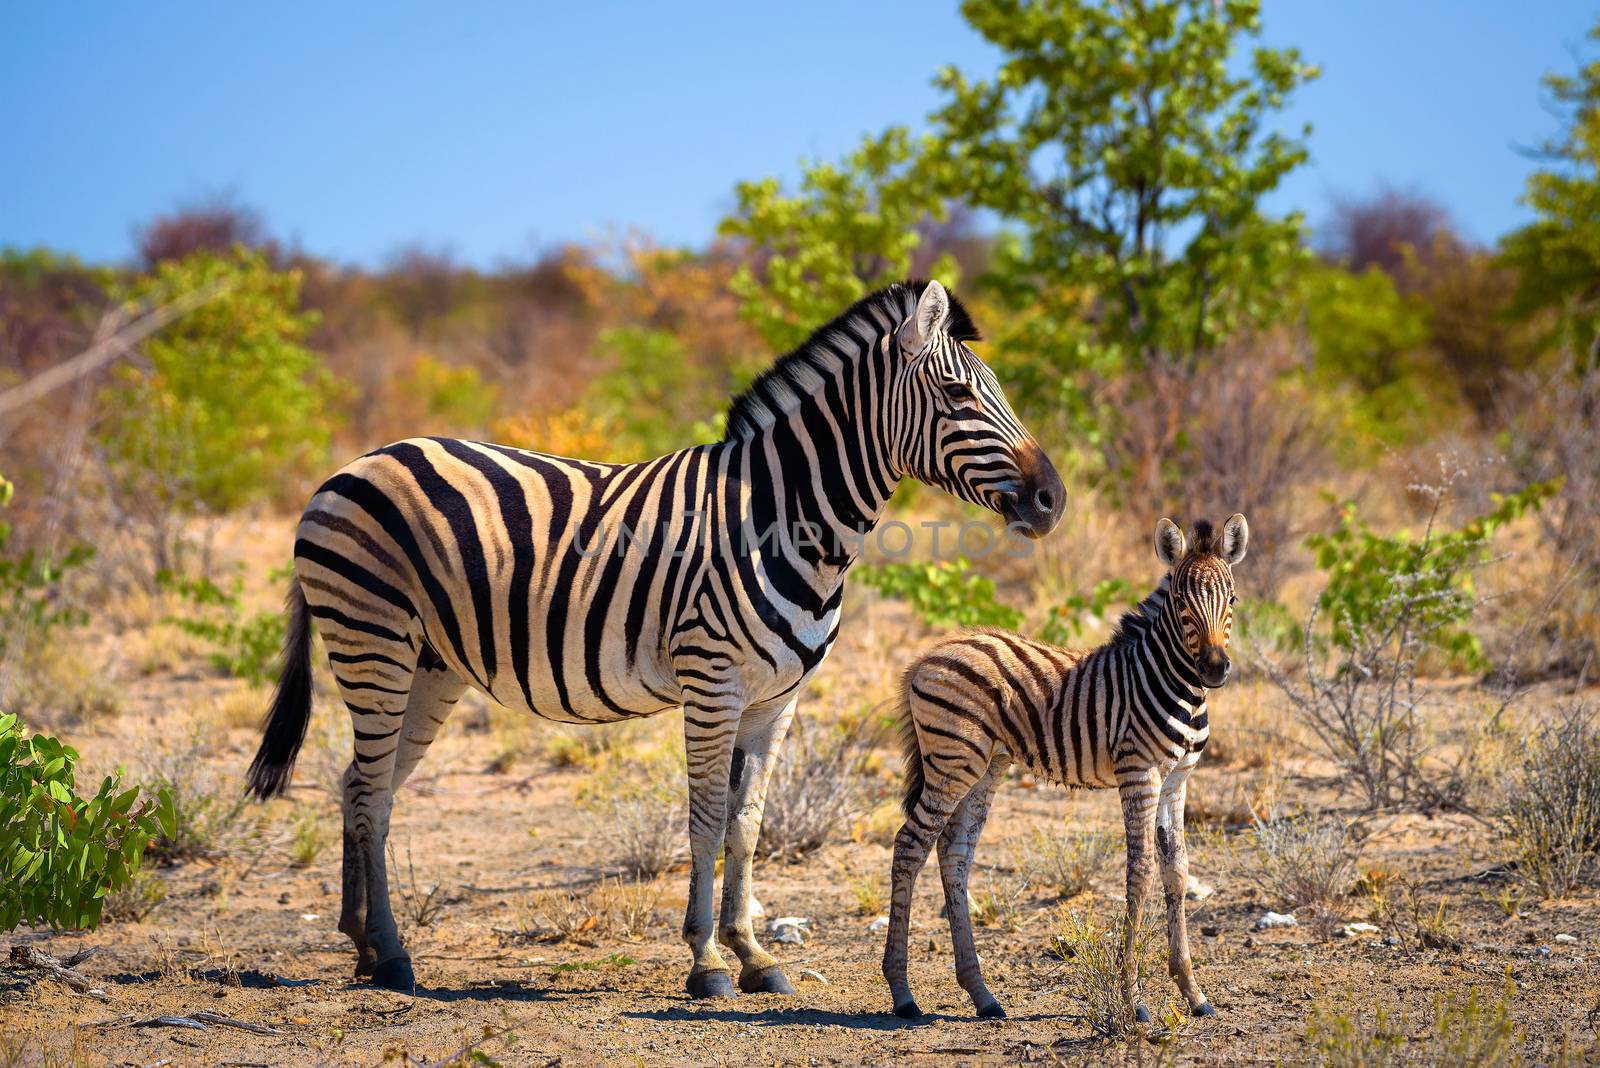 Two zebras in Etosha National Park, Namibia by nickfox